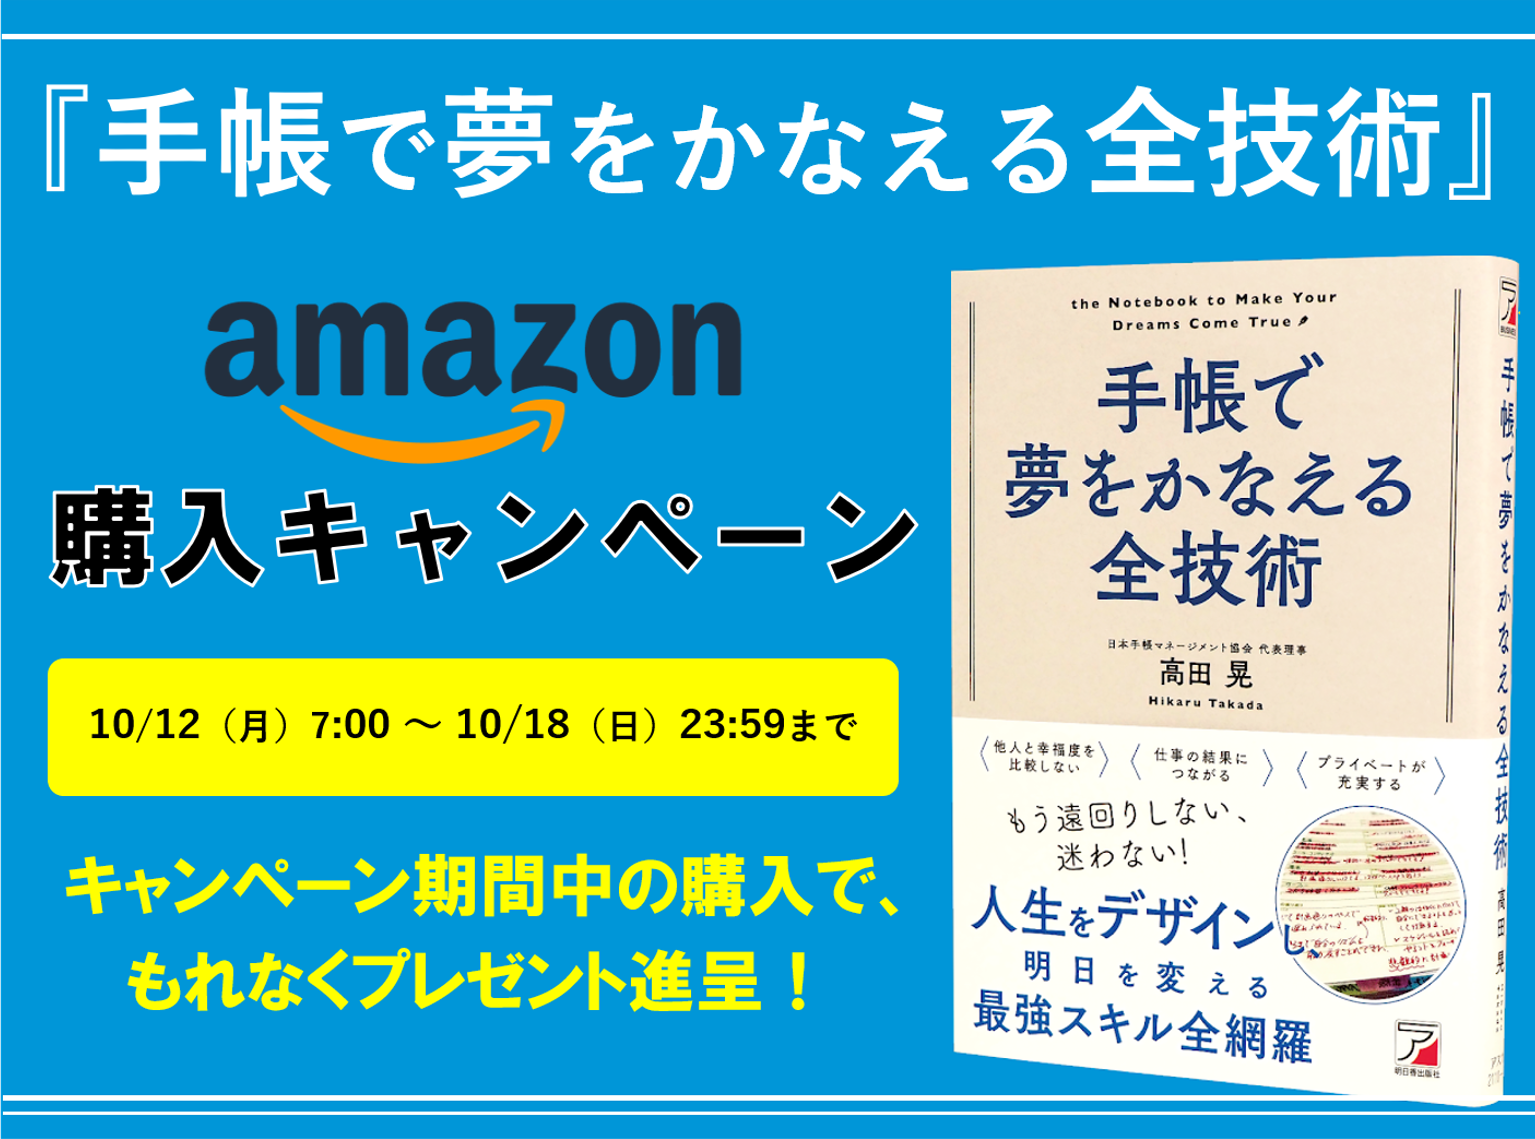 『手帳で夢をかなえる全技術』amazon購入キャンペーン